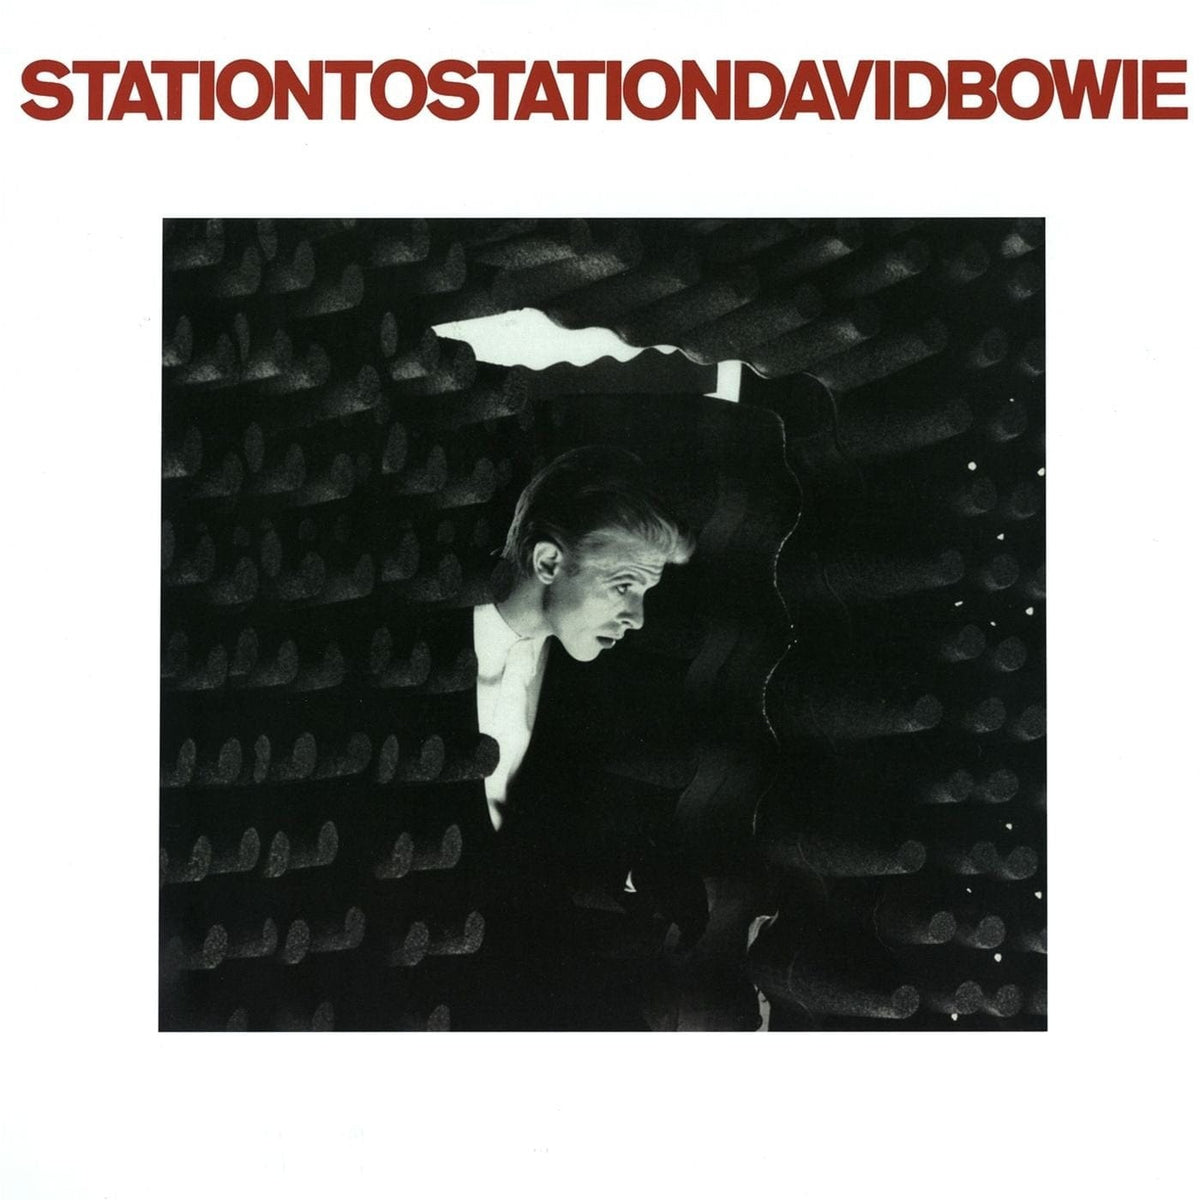 David Bowie - Station to Station - Black Vinyl - Third Eye